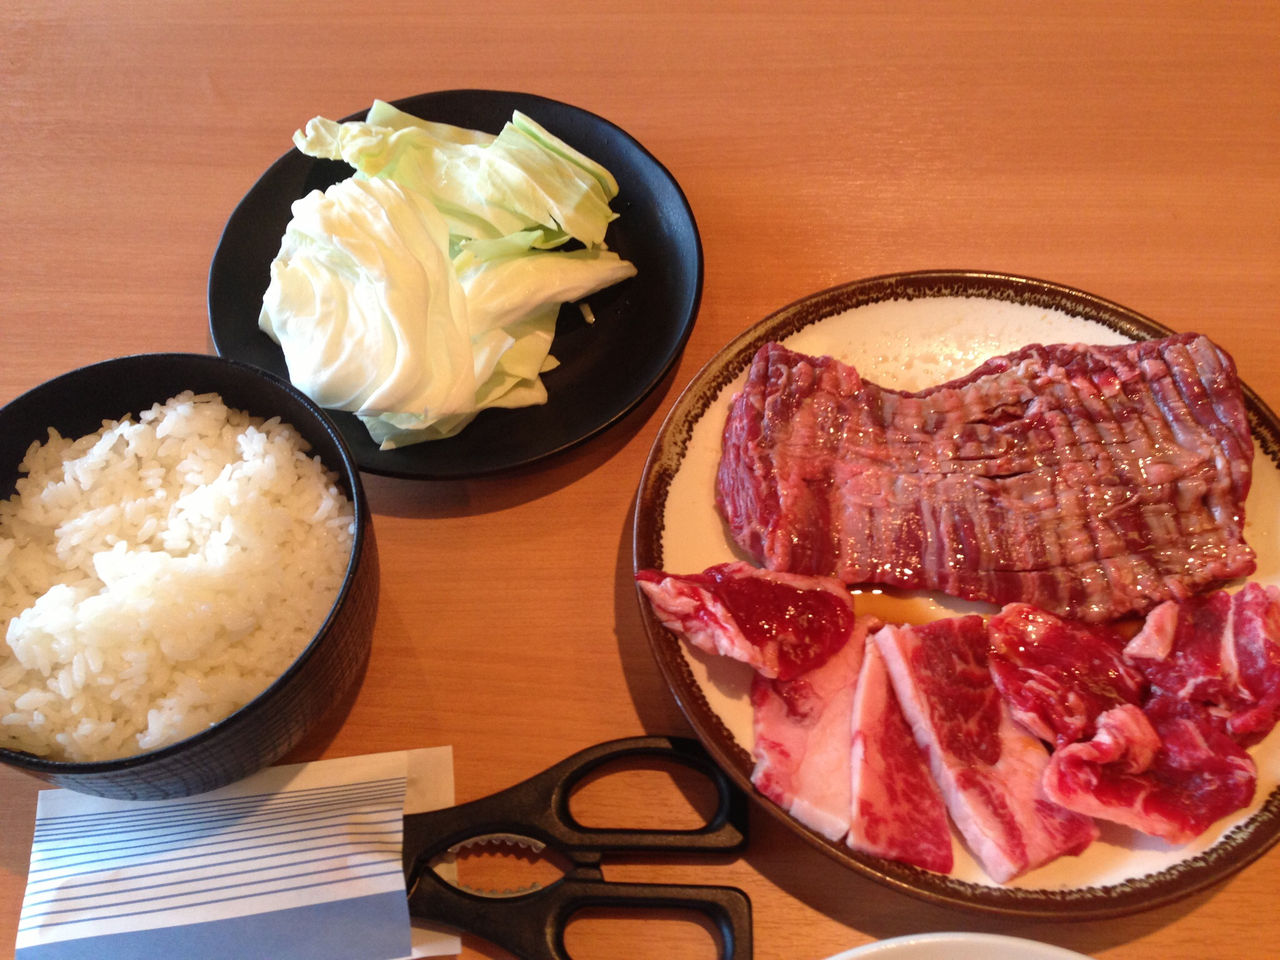 福岡の焼肉 ウエスト West 焼肉食べ放題 うまいもんブログ 本当に美味い おいしい店のみ掲載